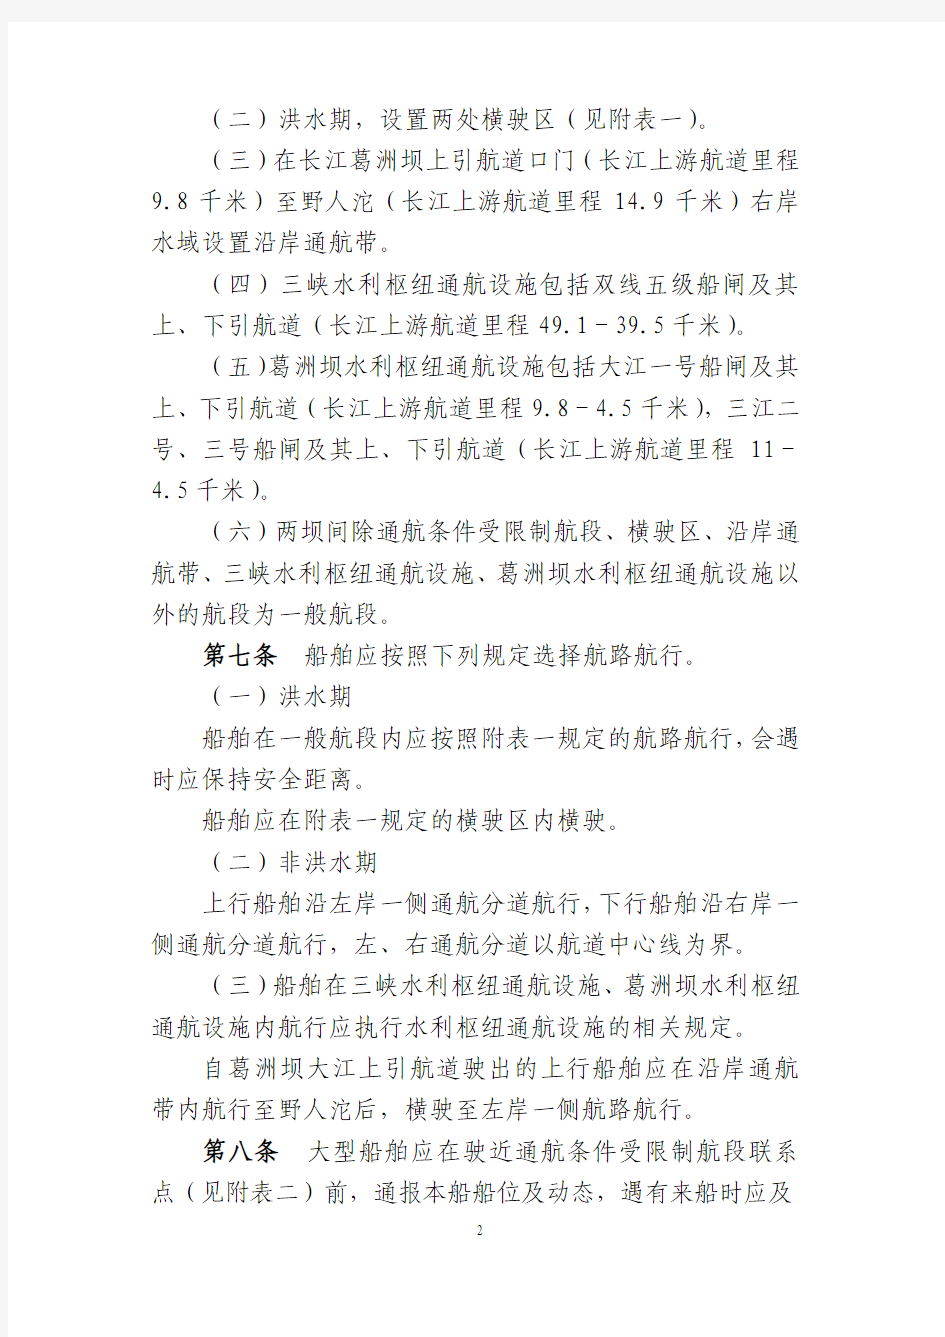 长江三峡大坝-葛洲坝水域船舶分道航行规则